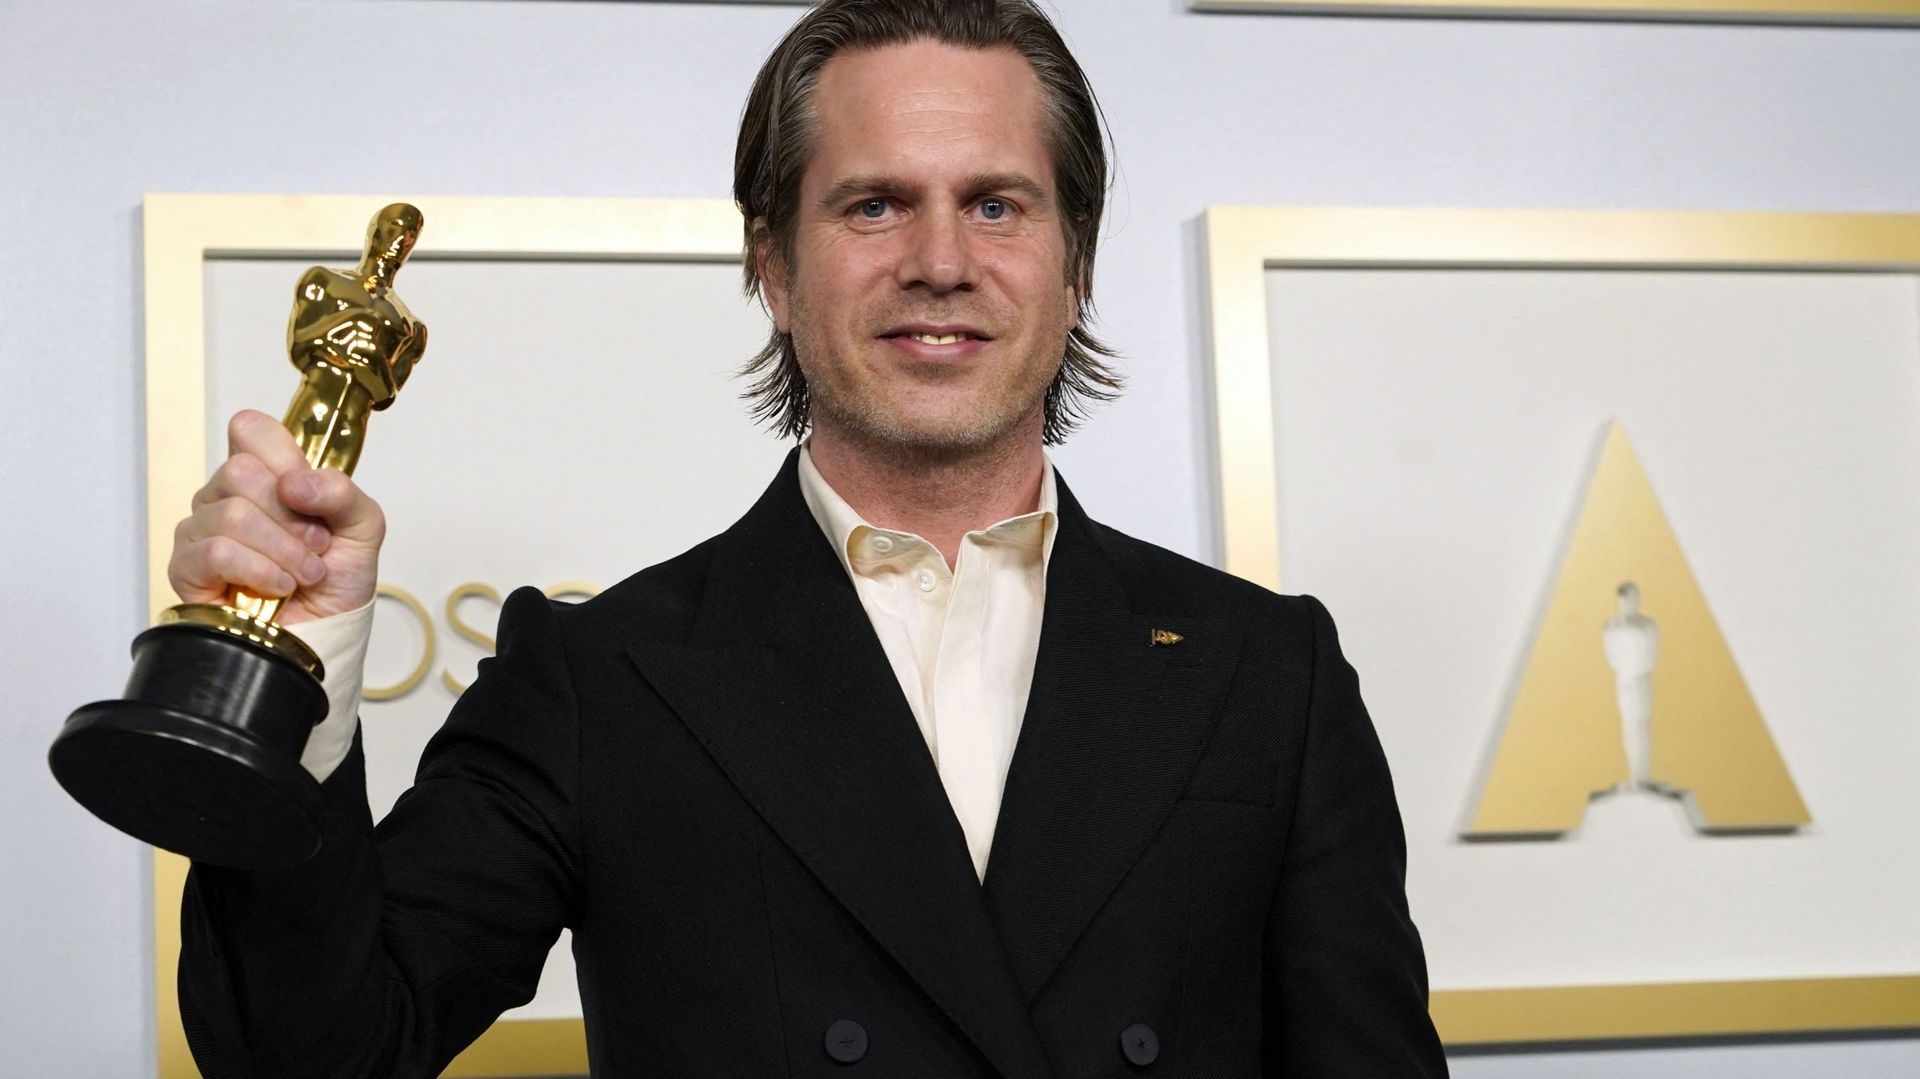 Mikkel E. G. Nielsen, lauréat de l’award pour "Sound of Metal"